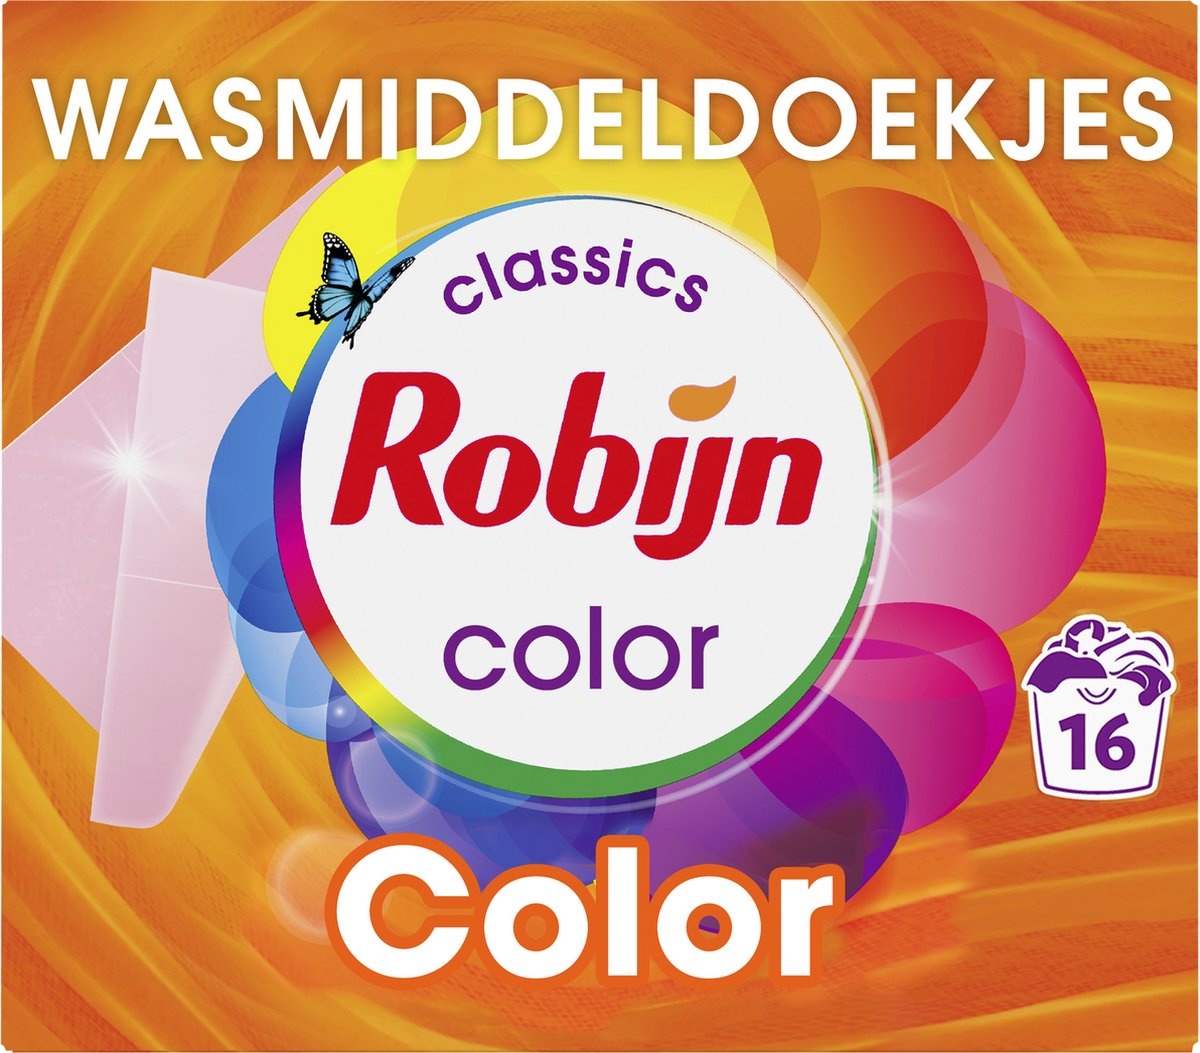 Robijn Classics Color Wasmiddeldoekjes 16 wasstrips - Verpakking beschadigd